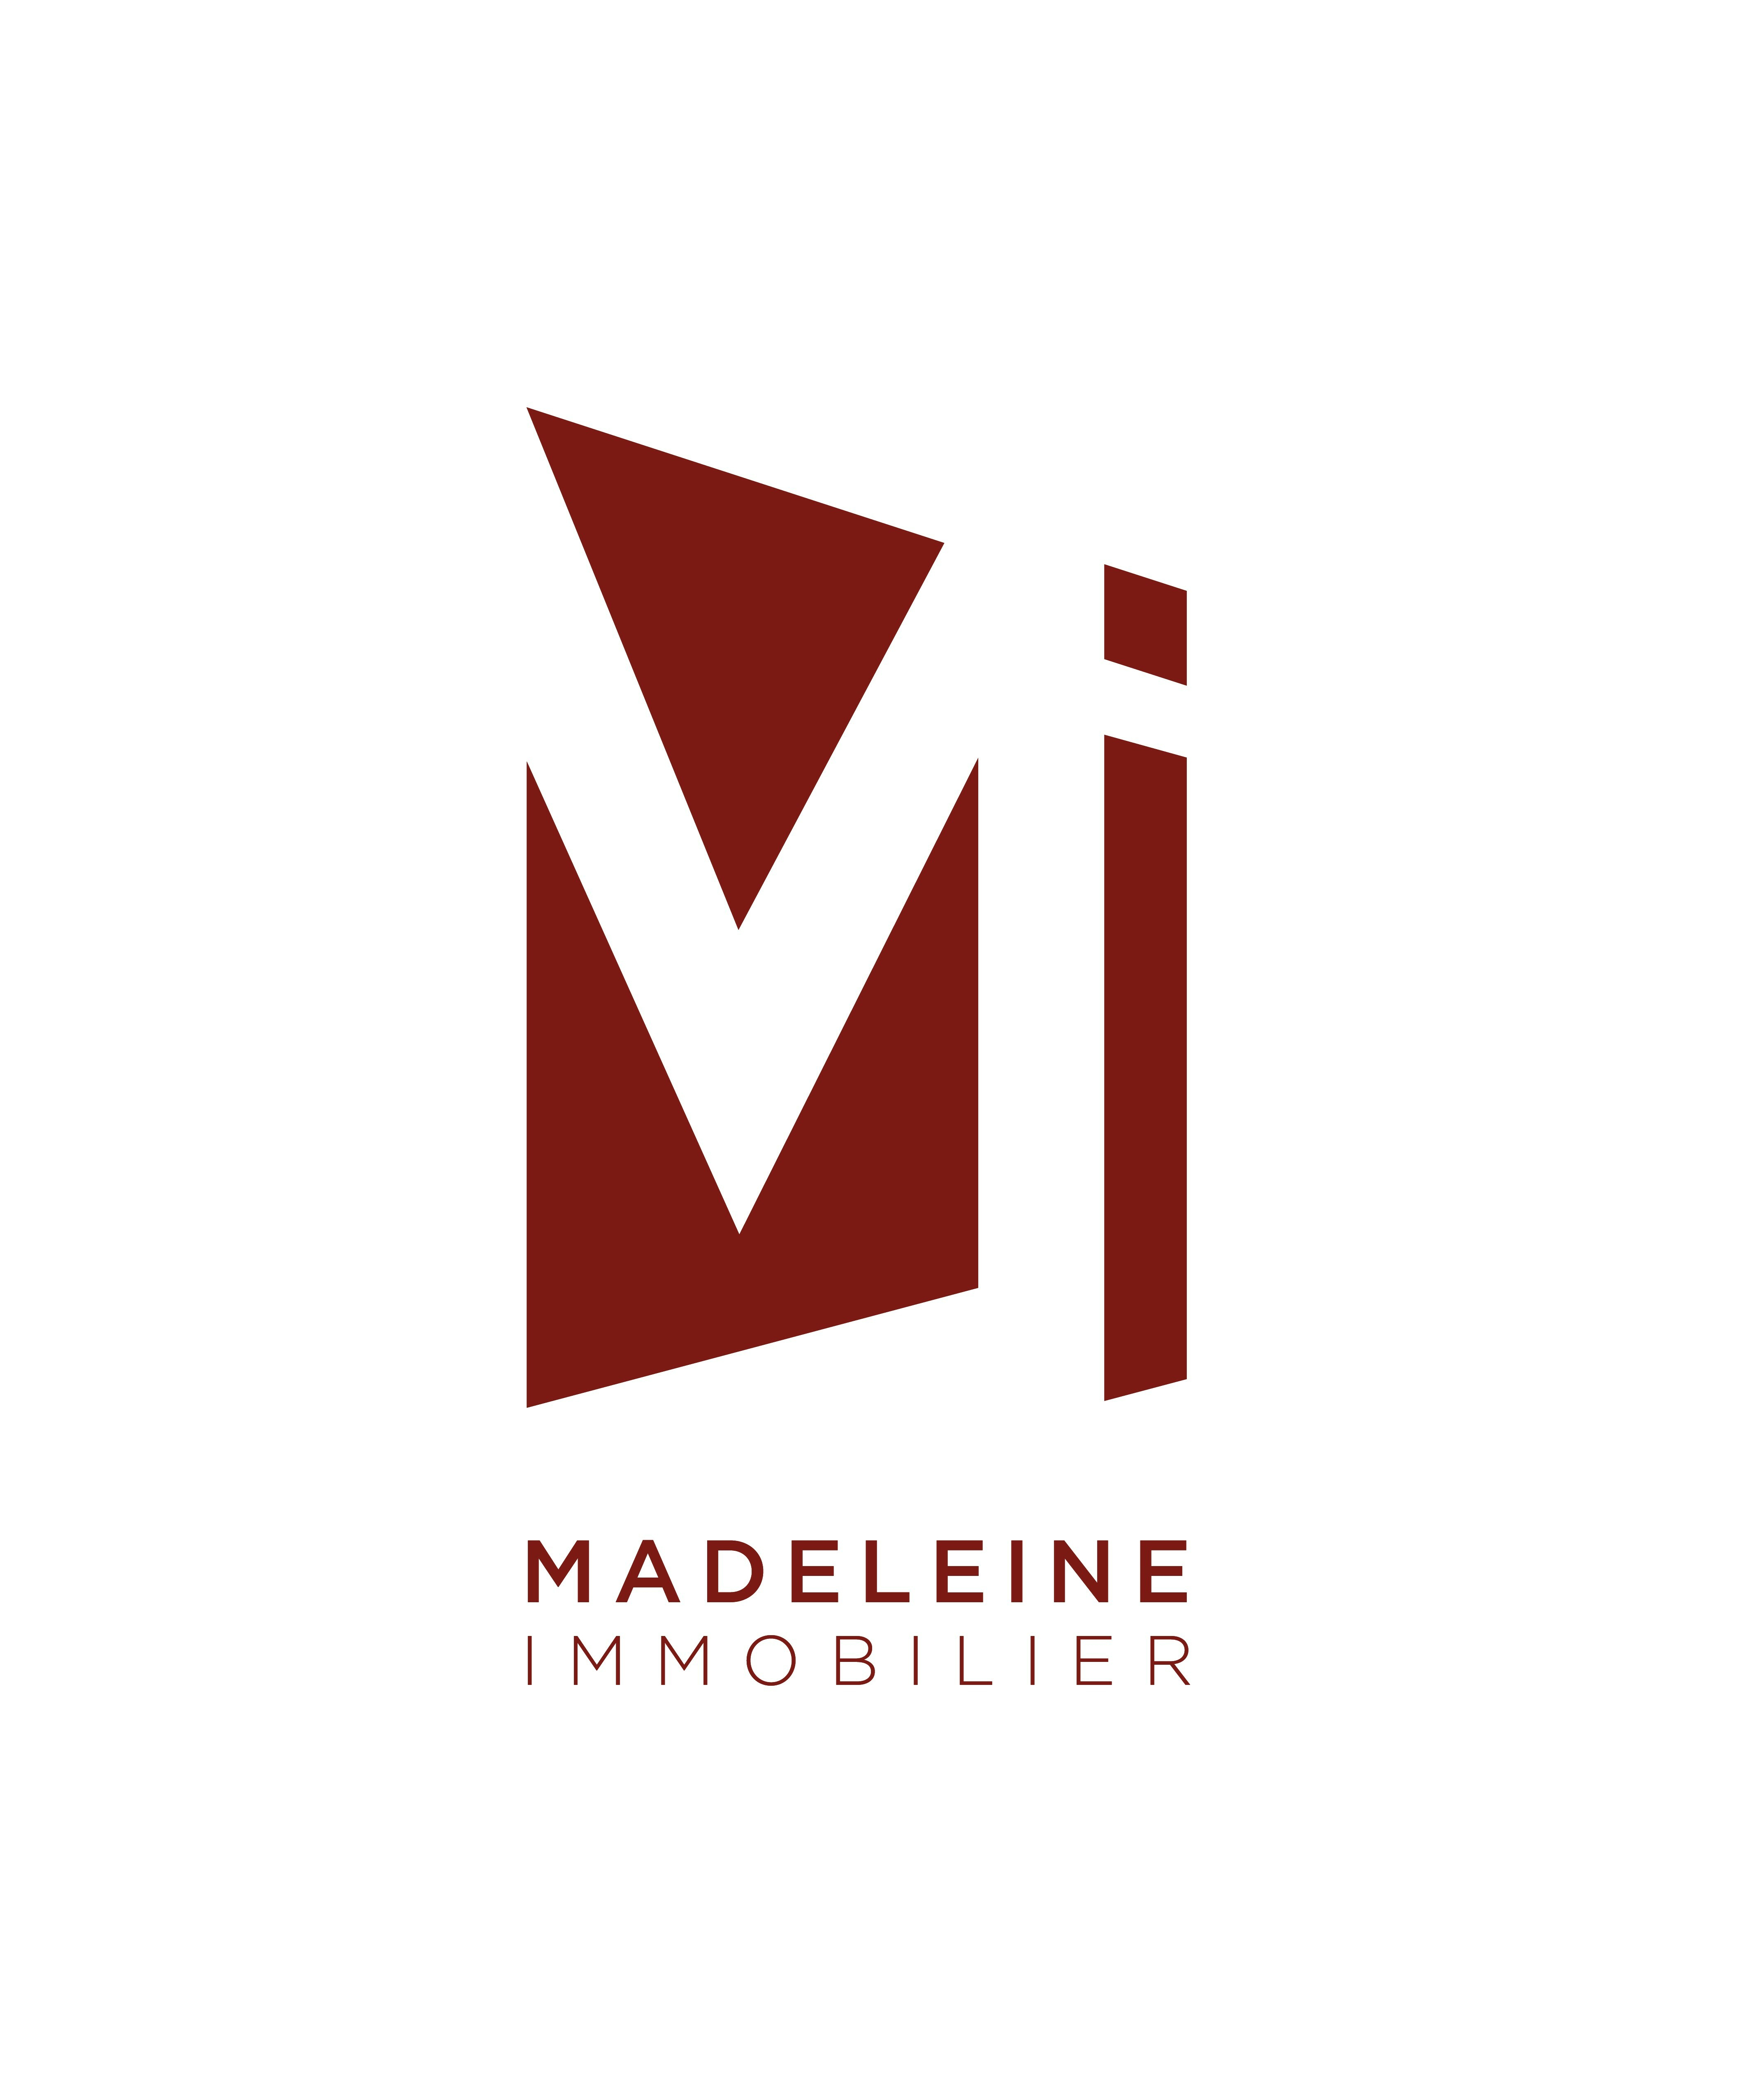 MADELEINE IMMOBILIER